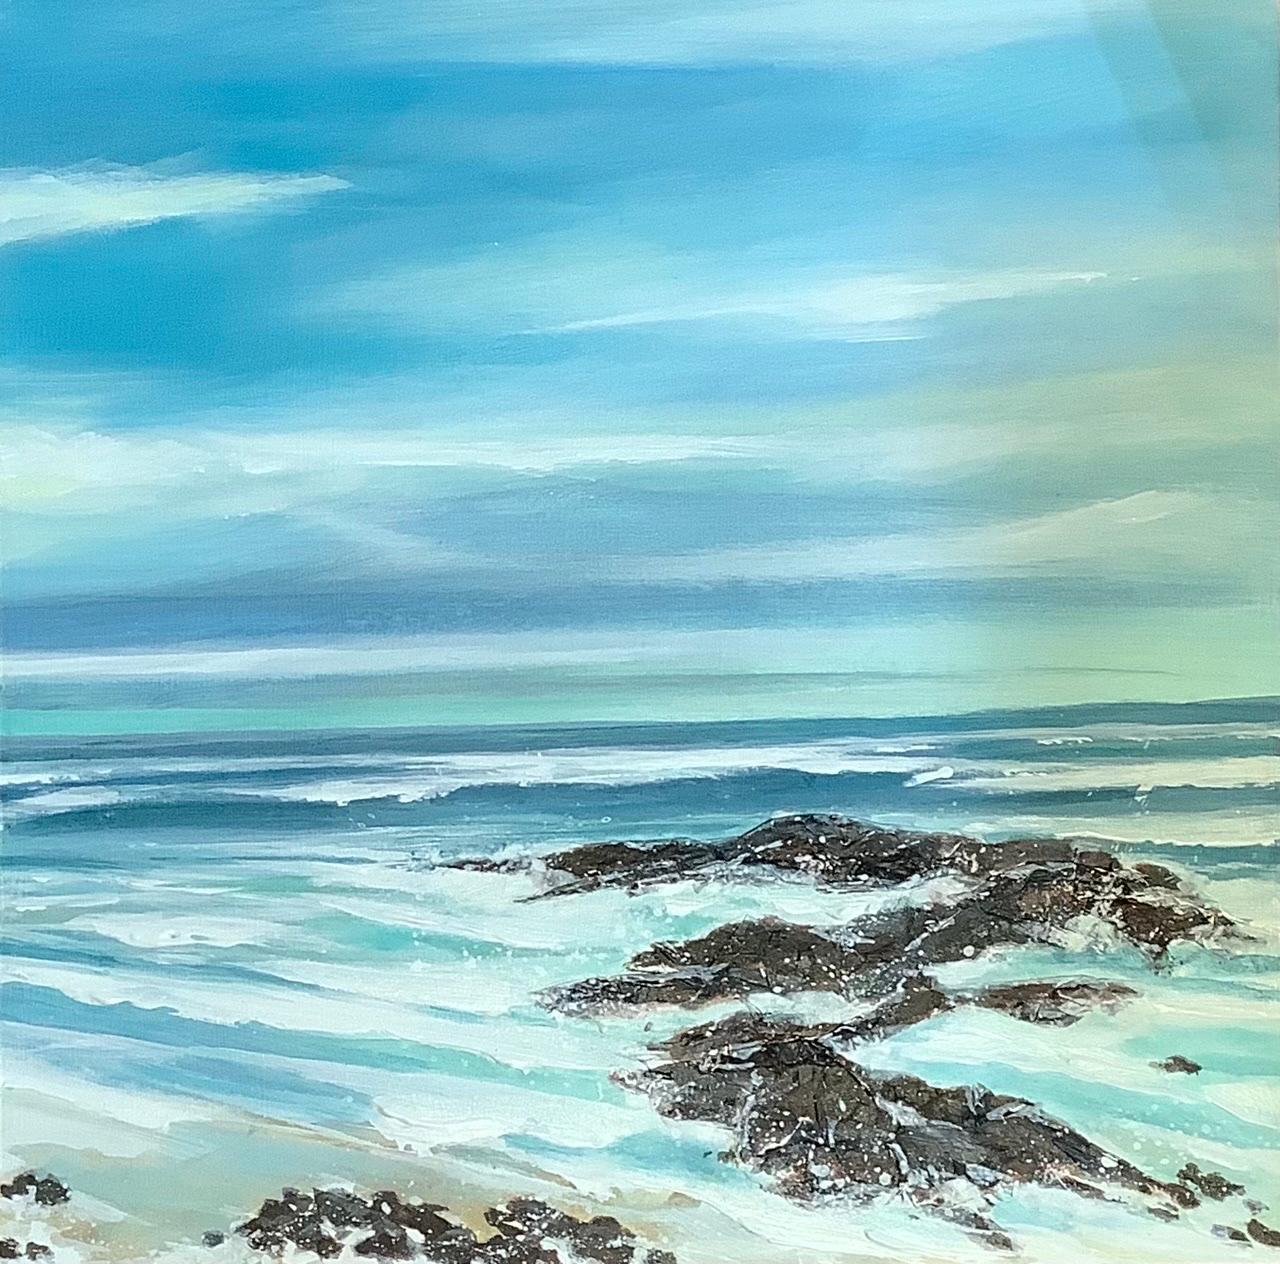 Priests Cove II, Adele Riley, Meereslandschaftsgemälde im klassischen Stil, Leuchtende Meereskunst